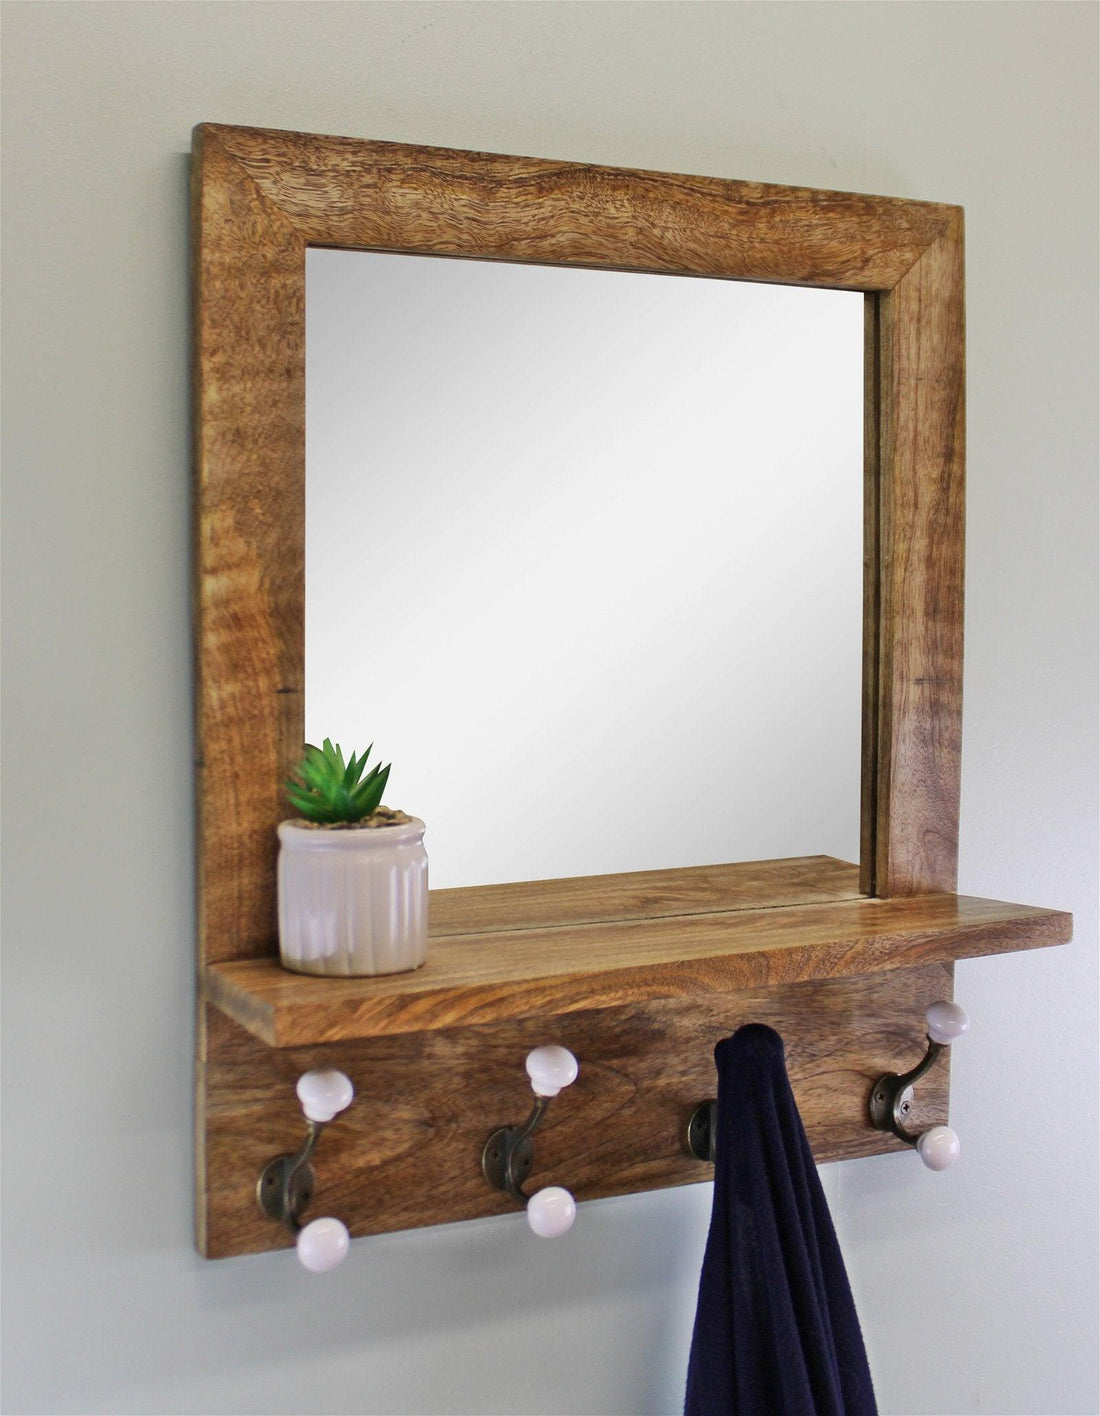 Mango Wood Shelf Unit With Mirror & 4 Double Coat Hooks - £133.99 - Wall Hanging Shelving 